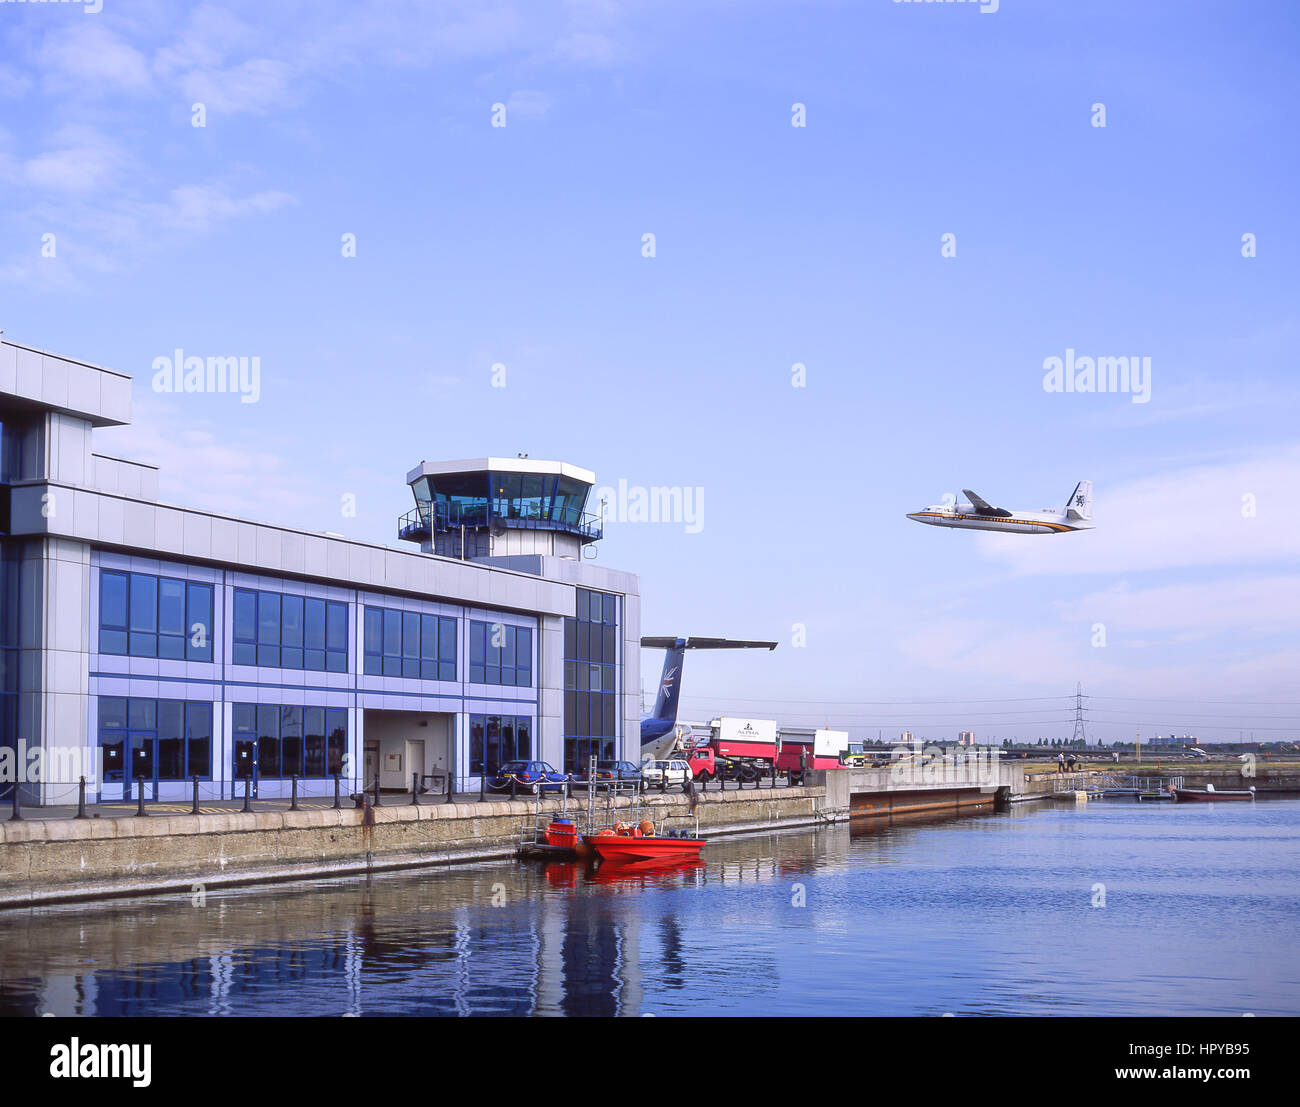 Les petits avions qui atterrissent à l'aéroport de London City, London, Greater London, Angleterre, Royaume-Uni Banque D'Images